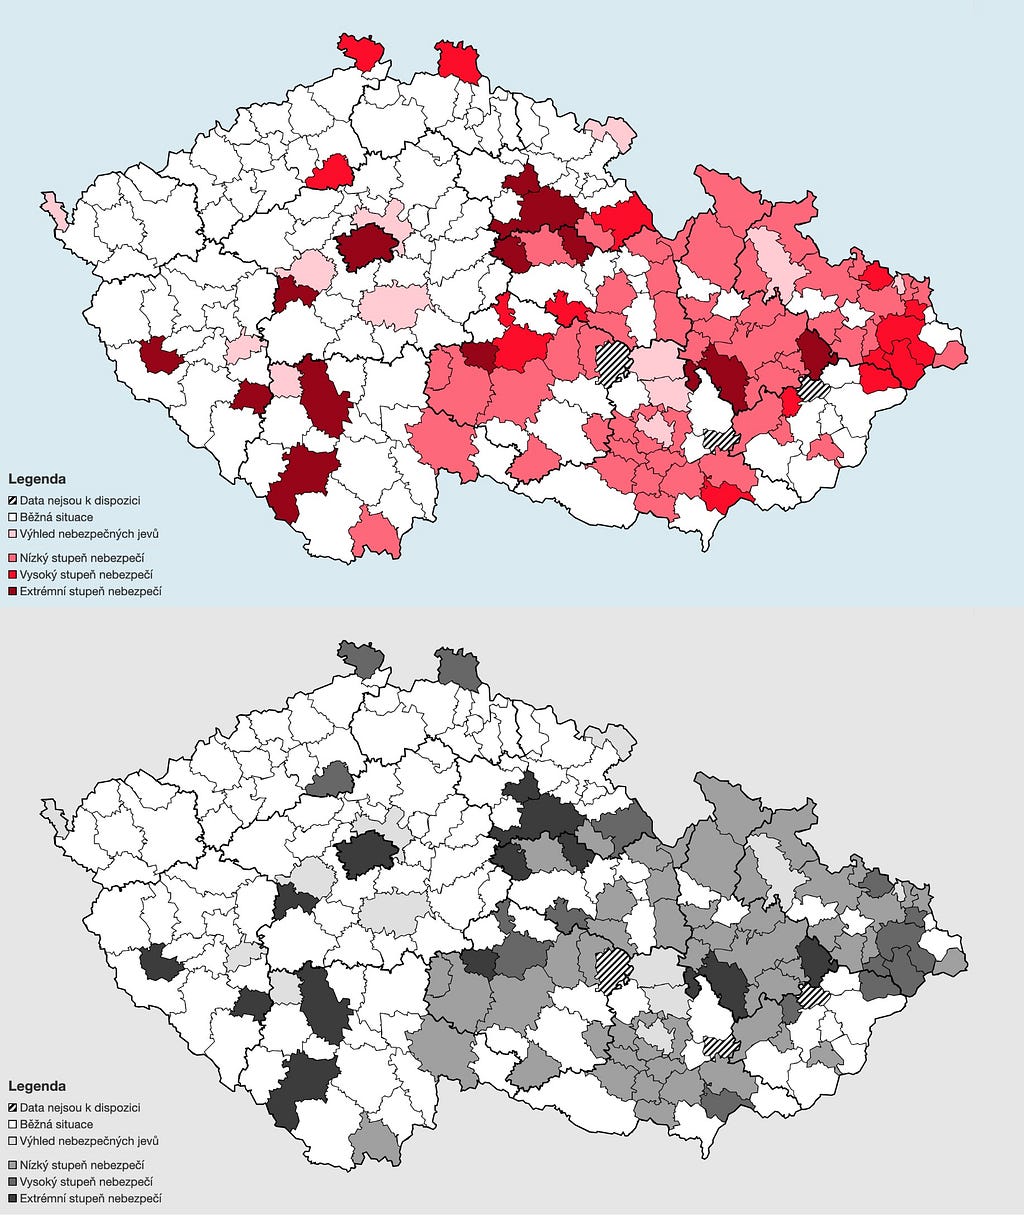 Dvě mapy České republiky pod sebou. V obou mapách jsou některé okresy vybarvené, zbytek je bílý. Na horní mapě jsou okresy vybarvené odstíny červené. Spodní mapa je černobílá.